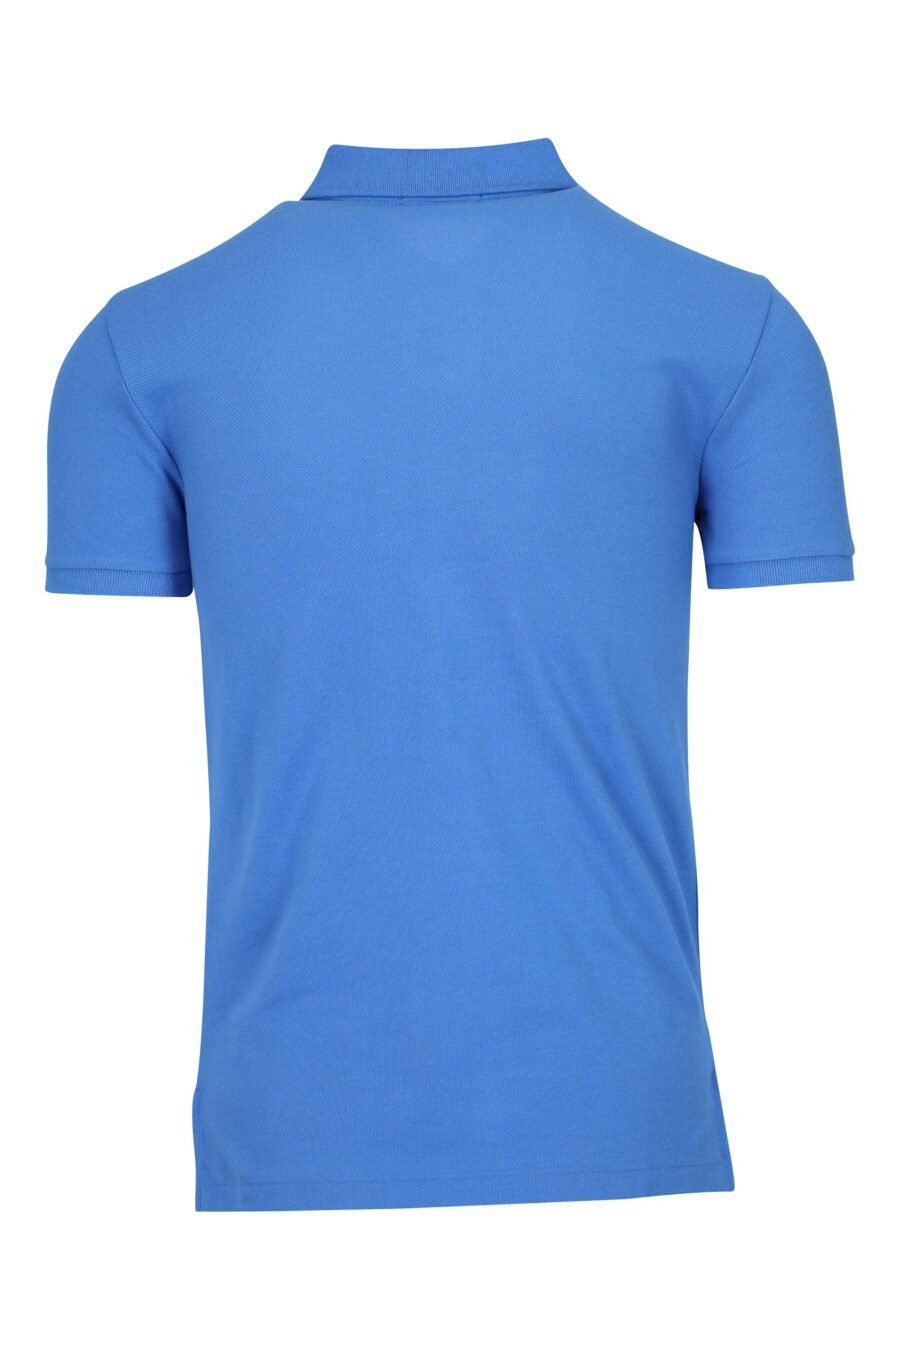 Blaues und rosa T-Shirt mit Mini-Logo "Polo" - 3616536089159 1